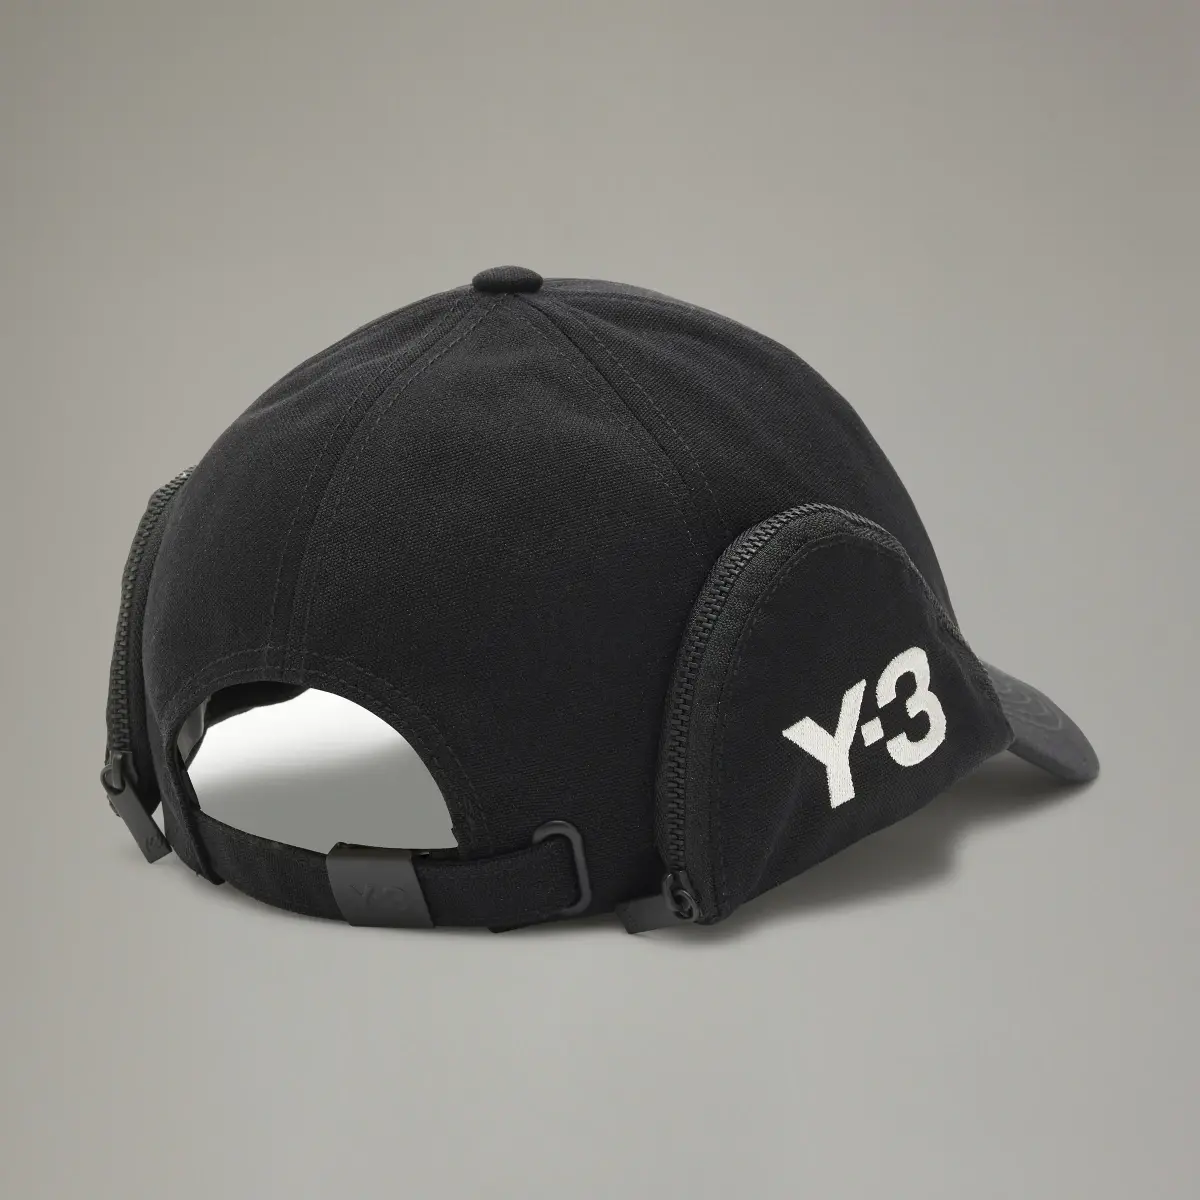 Adidas Y-3 POCKET CAP. 3